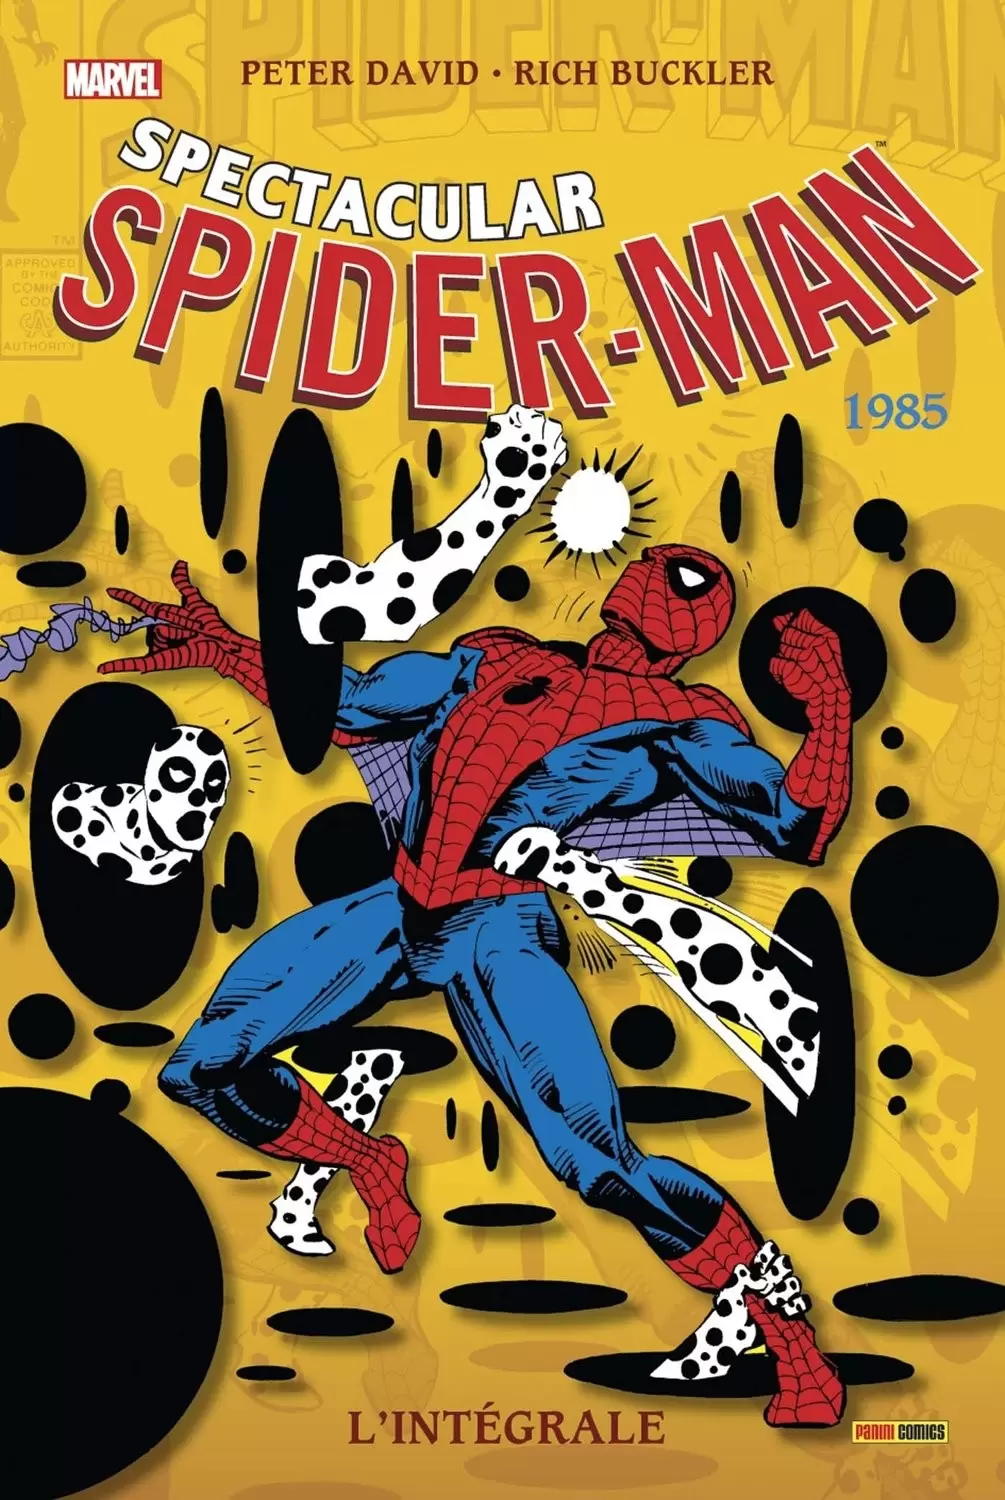 Spectacular Spider-Man - Spectacular Spider-Man 1985